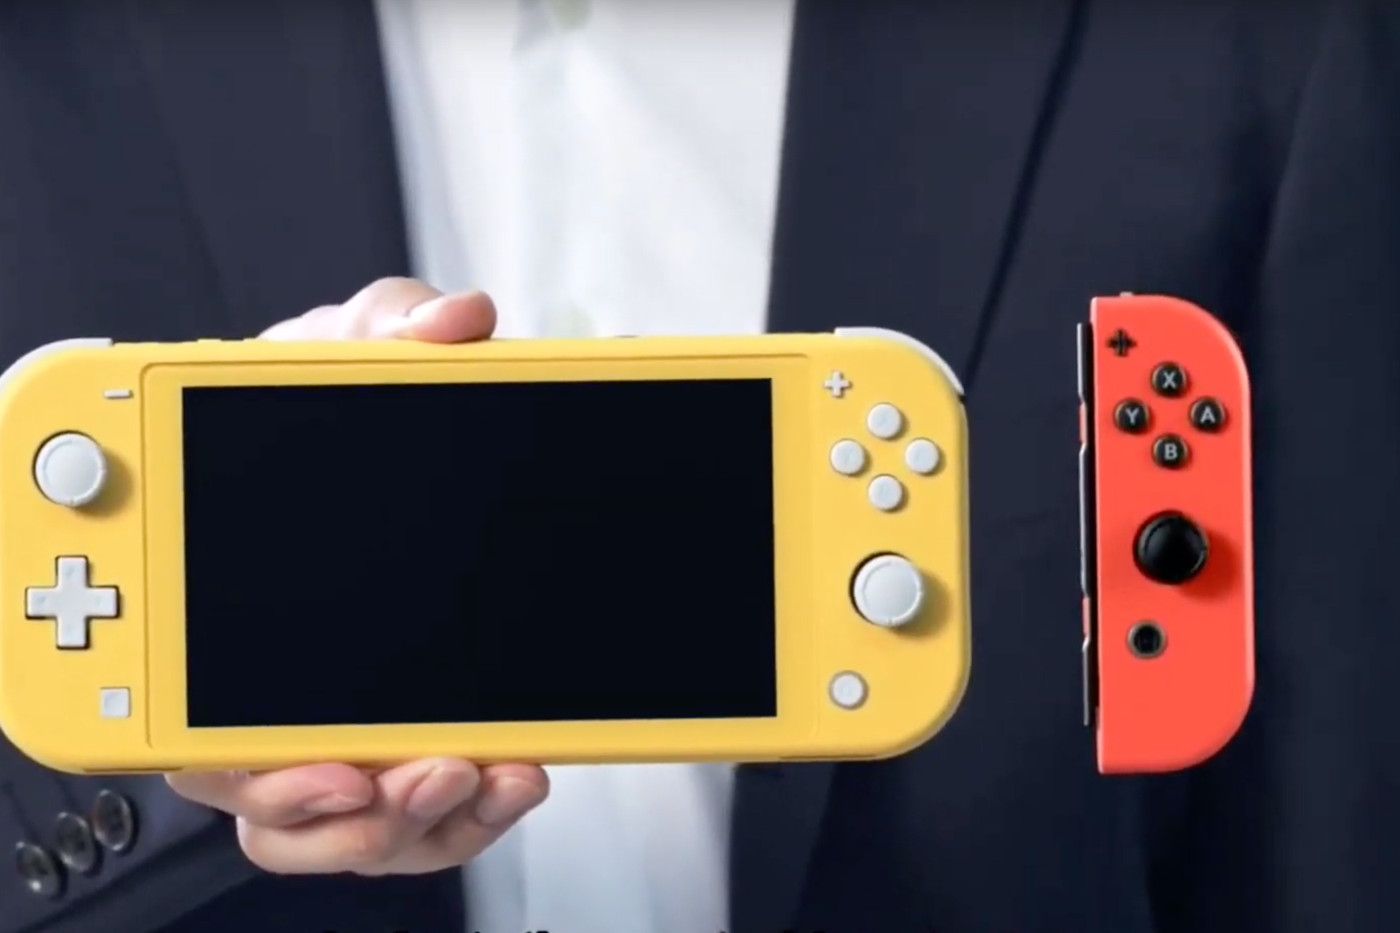 Indtægter Motivere Diplomatiske spørgsmål Can Nintendo's Switch Lite fix the Joy-Con analog stick issues? - Polygon